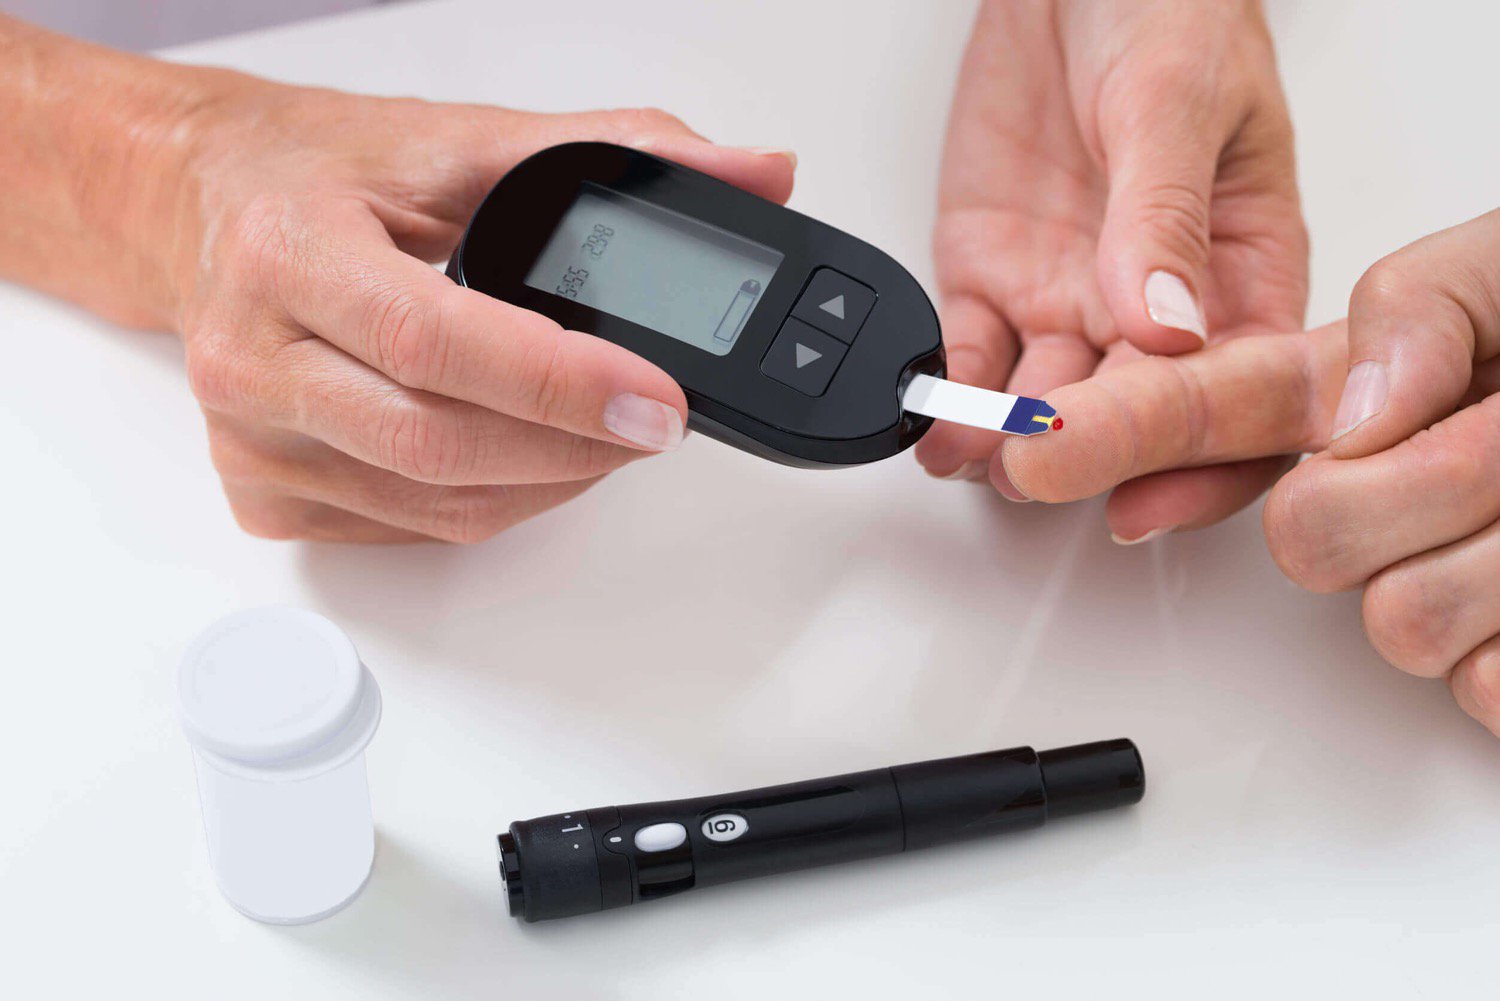 بدء التشغيل الجديدة سوف تساعد المرضى الذين يعانون من مرض السكري من دون أدوية